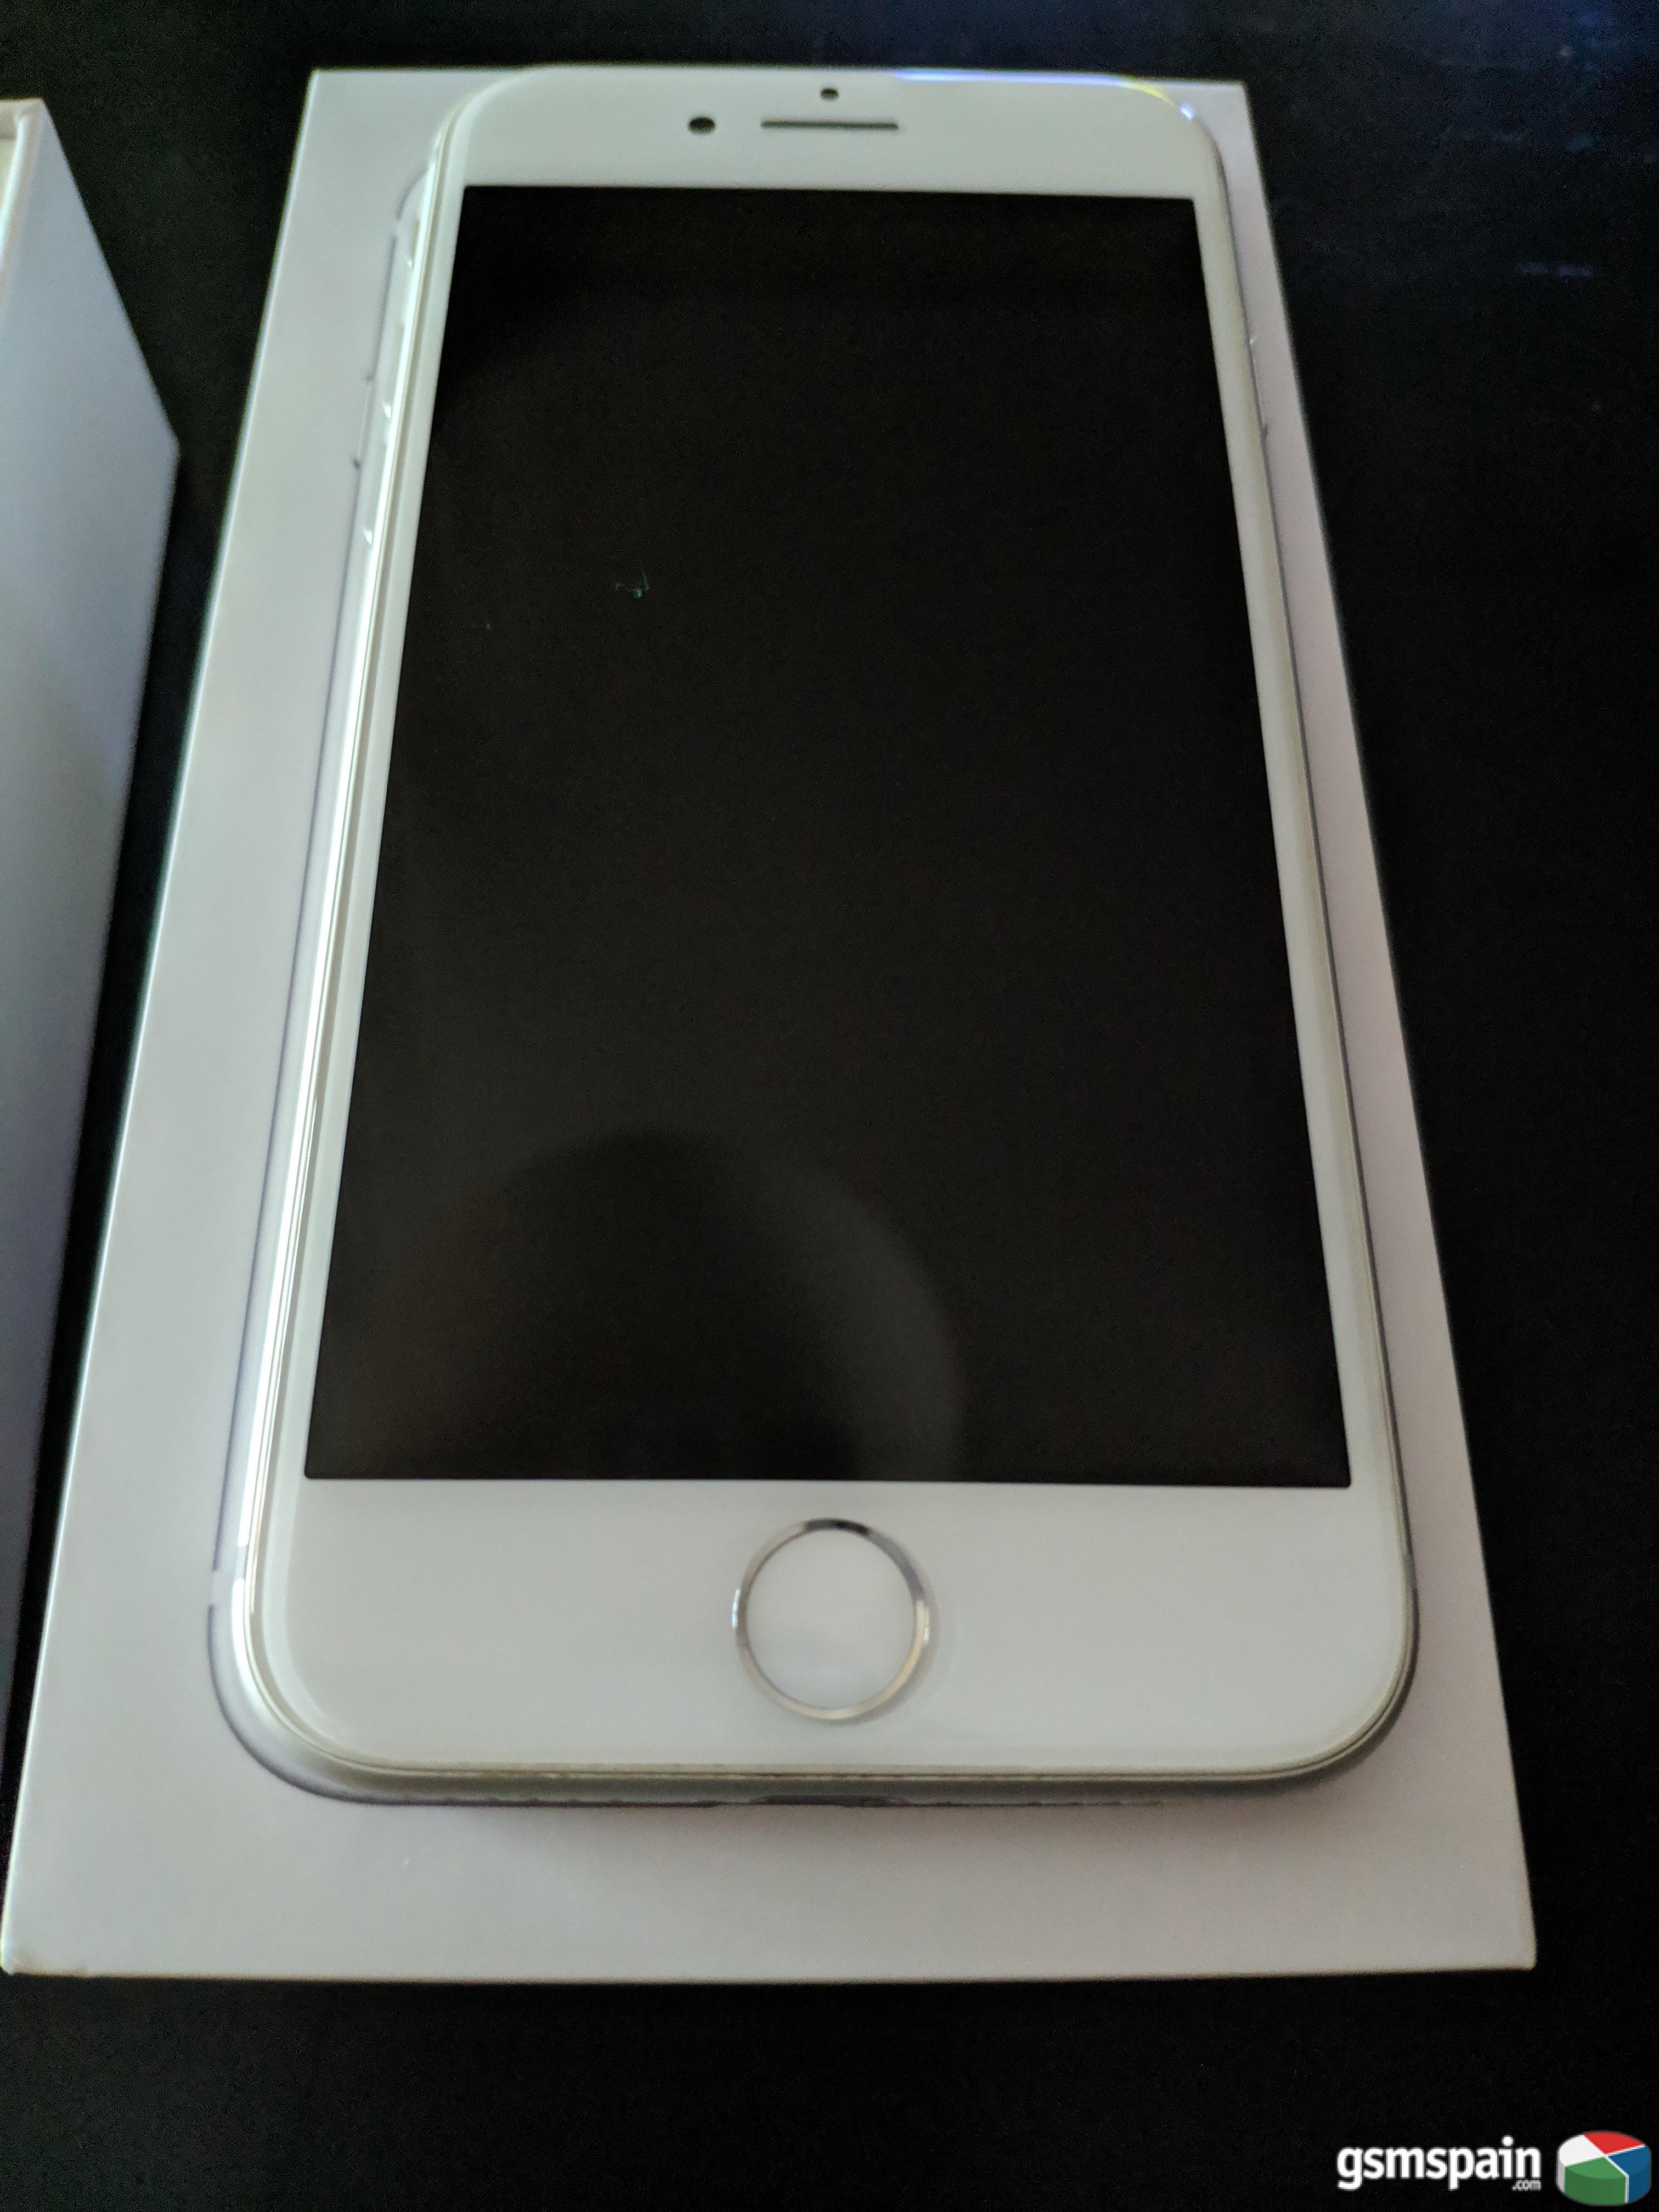 [VENDO] iPhone 8 - Muy buen estado - 64 Gb - Blanco, accesorios nuevos